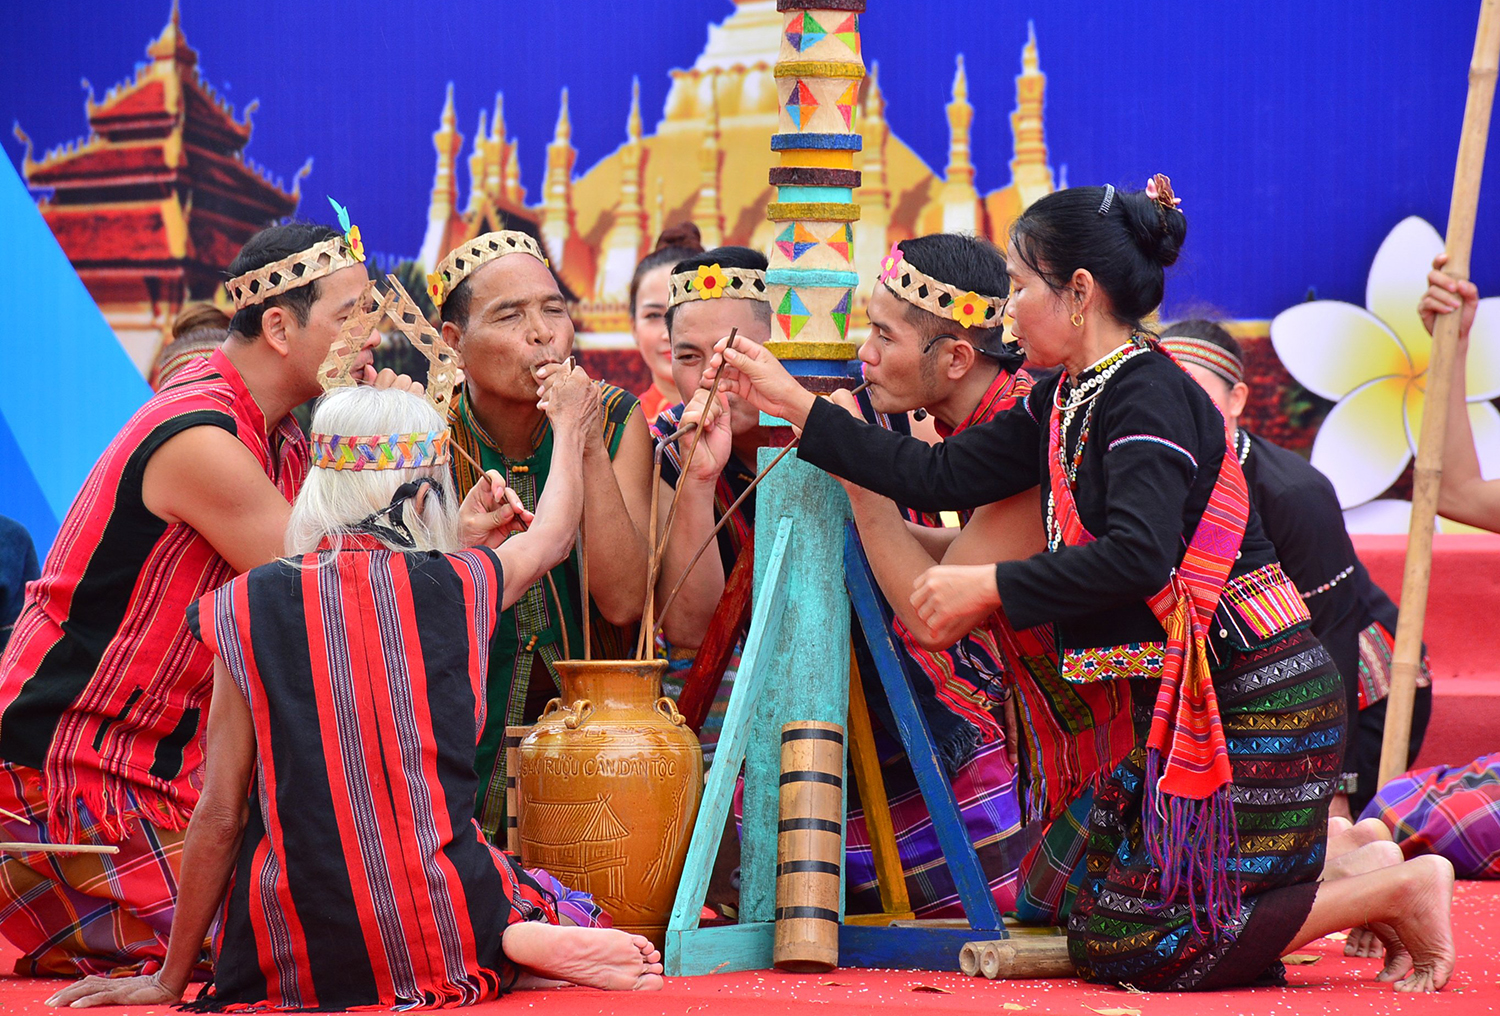  đoàn Quảng Bình đã biểu diễn các tiết mục nghệ thuật với các làn điệu dân ca, múa dân gian, nhạc cụ dân tộc mang nét riêng, độc đáo của các dân tộc đang sinh sống ở phía Tây Quảng Bình.